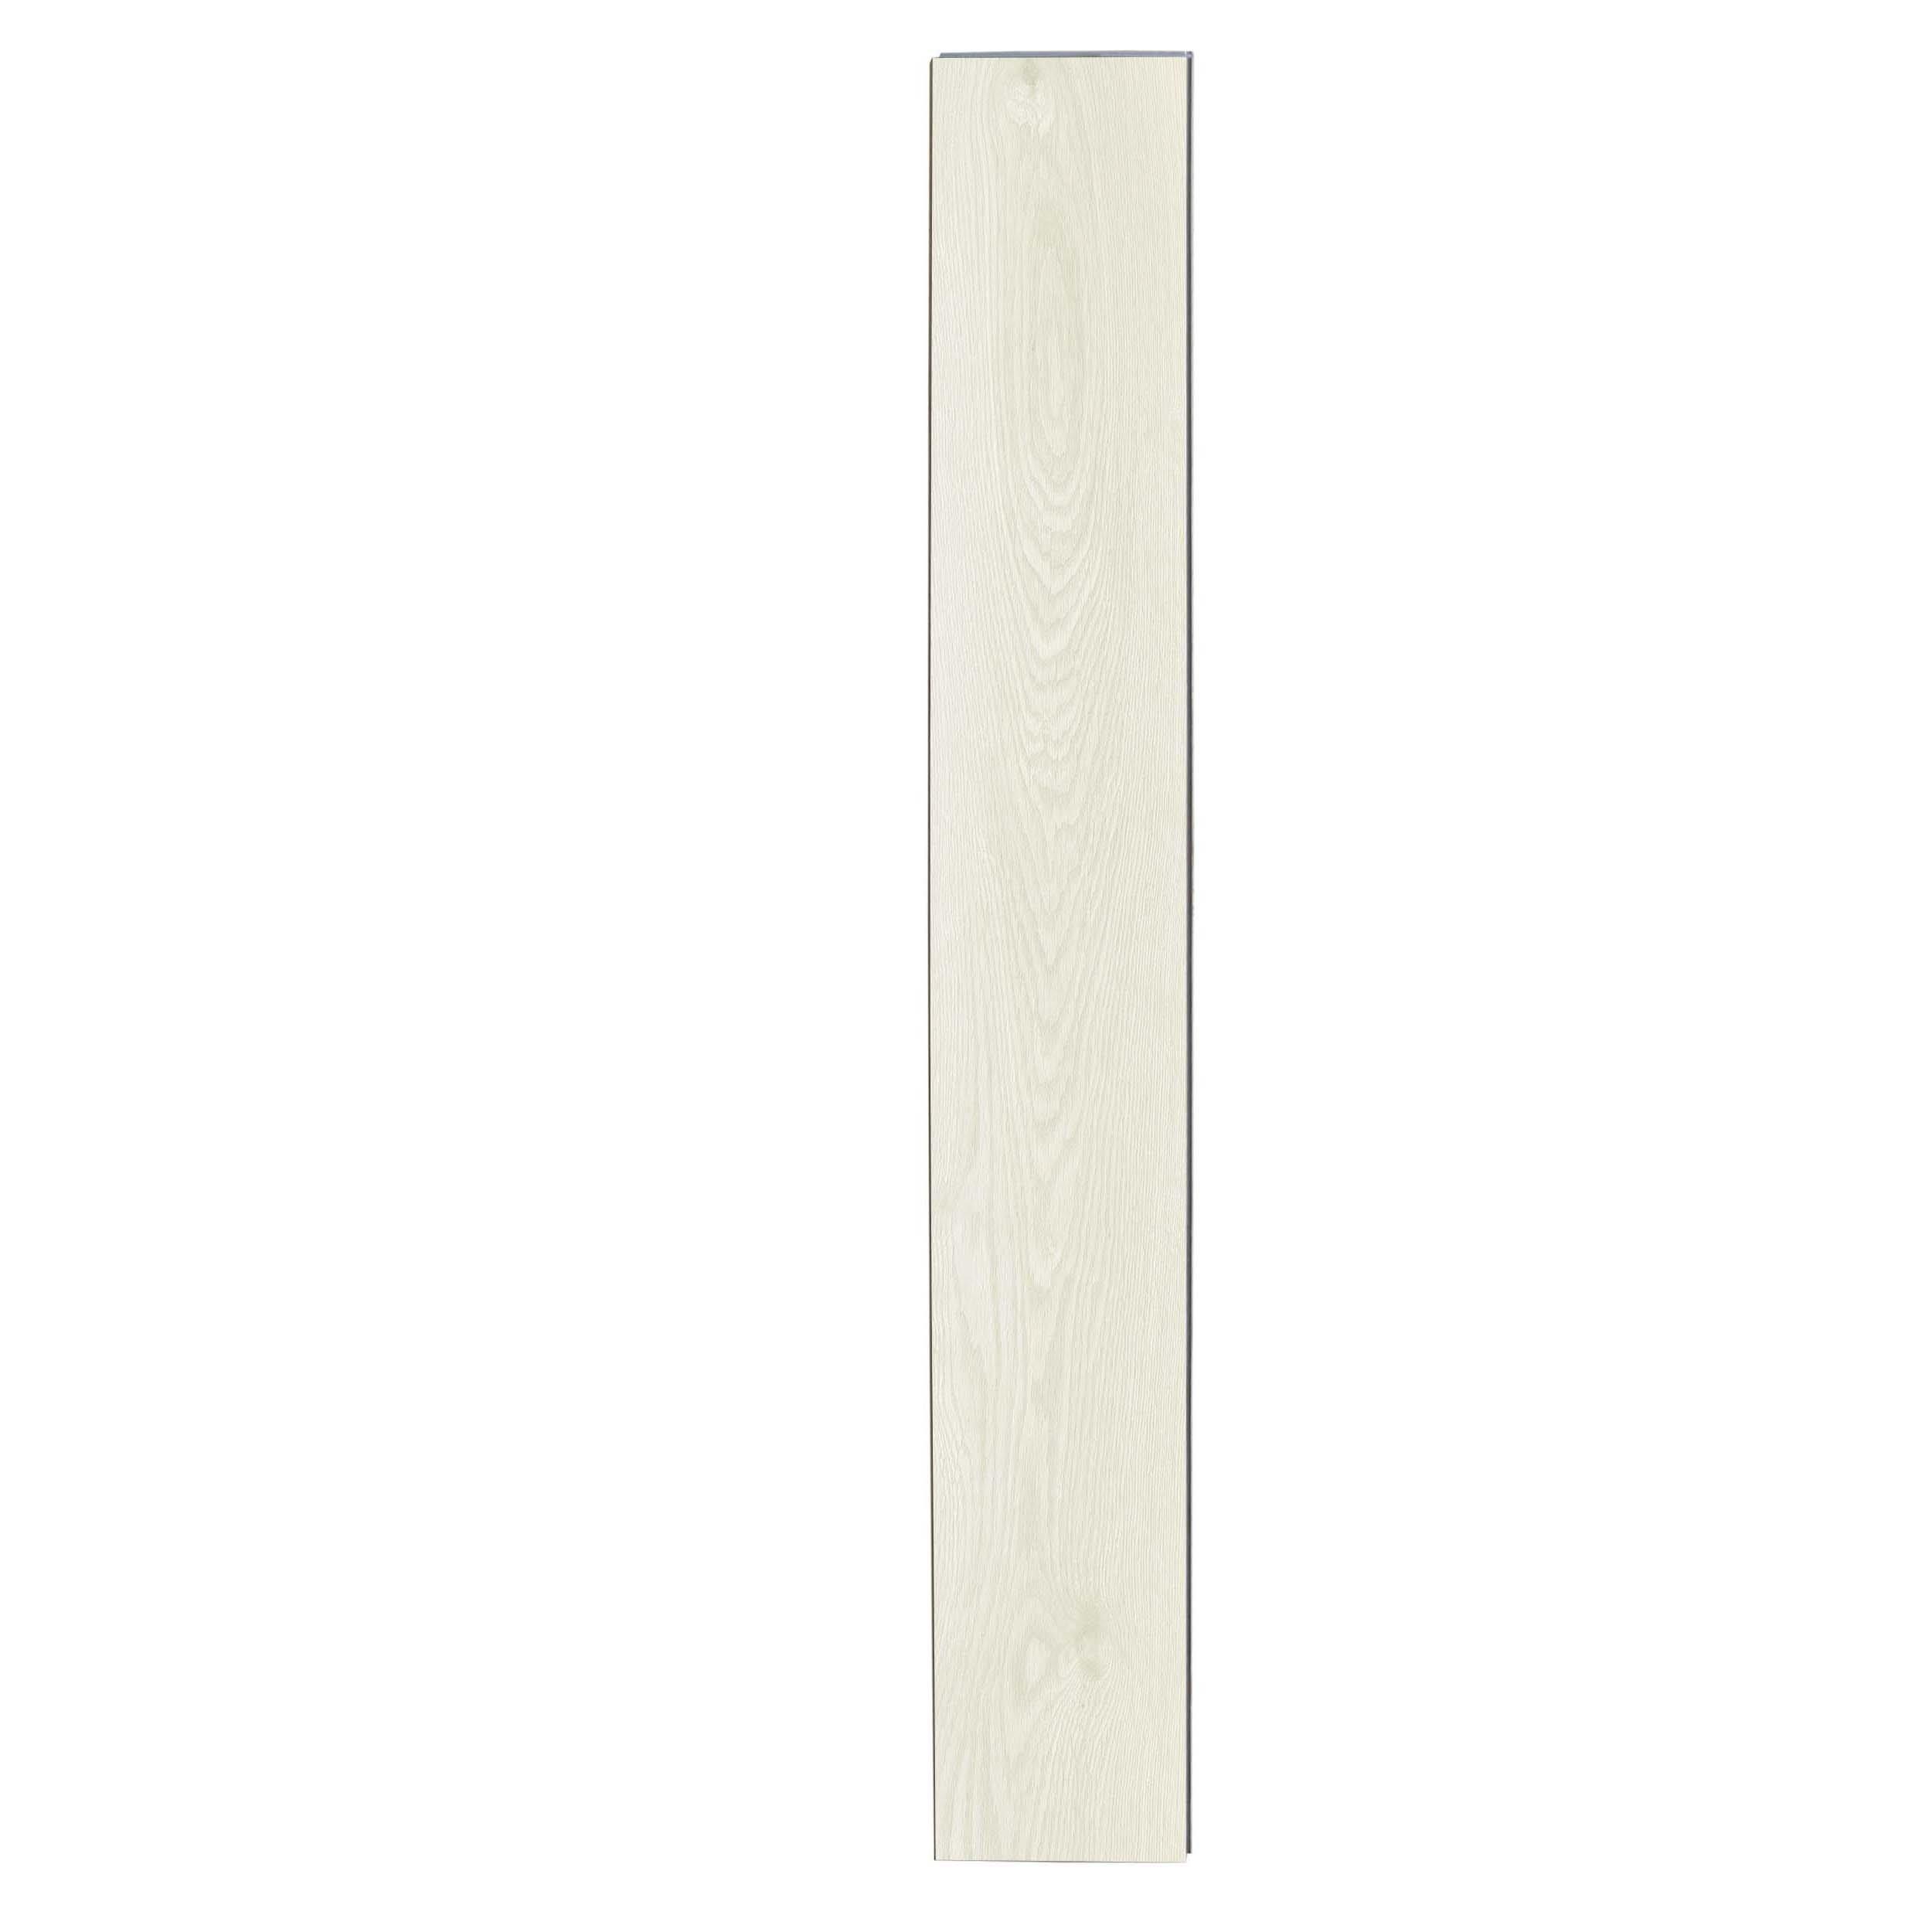 Iced Oak Rigid Core Luxury Vinyl Plank - Foam Back